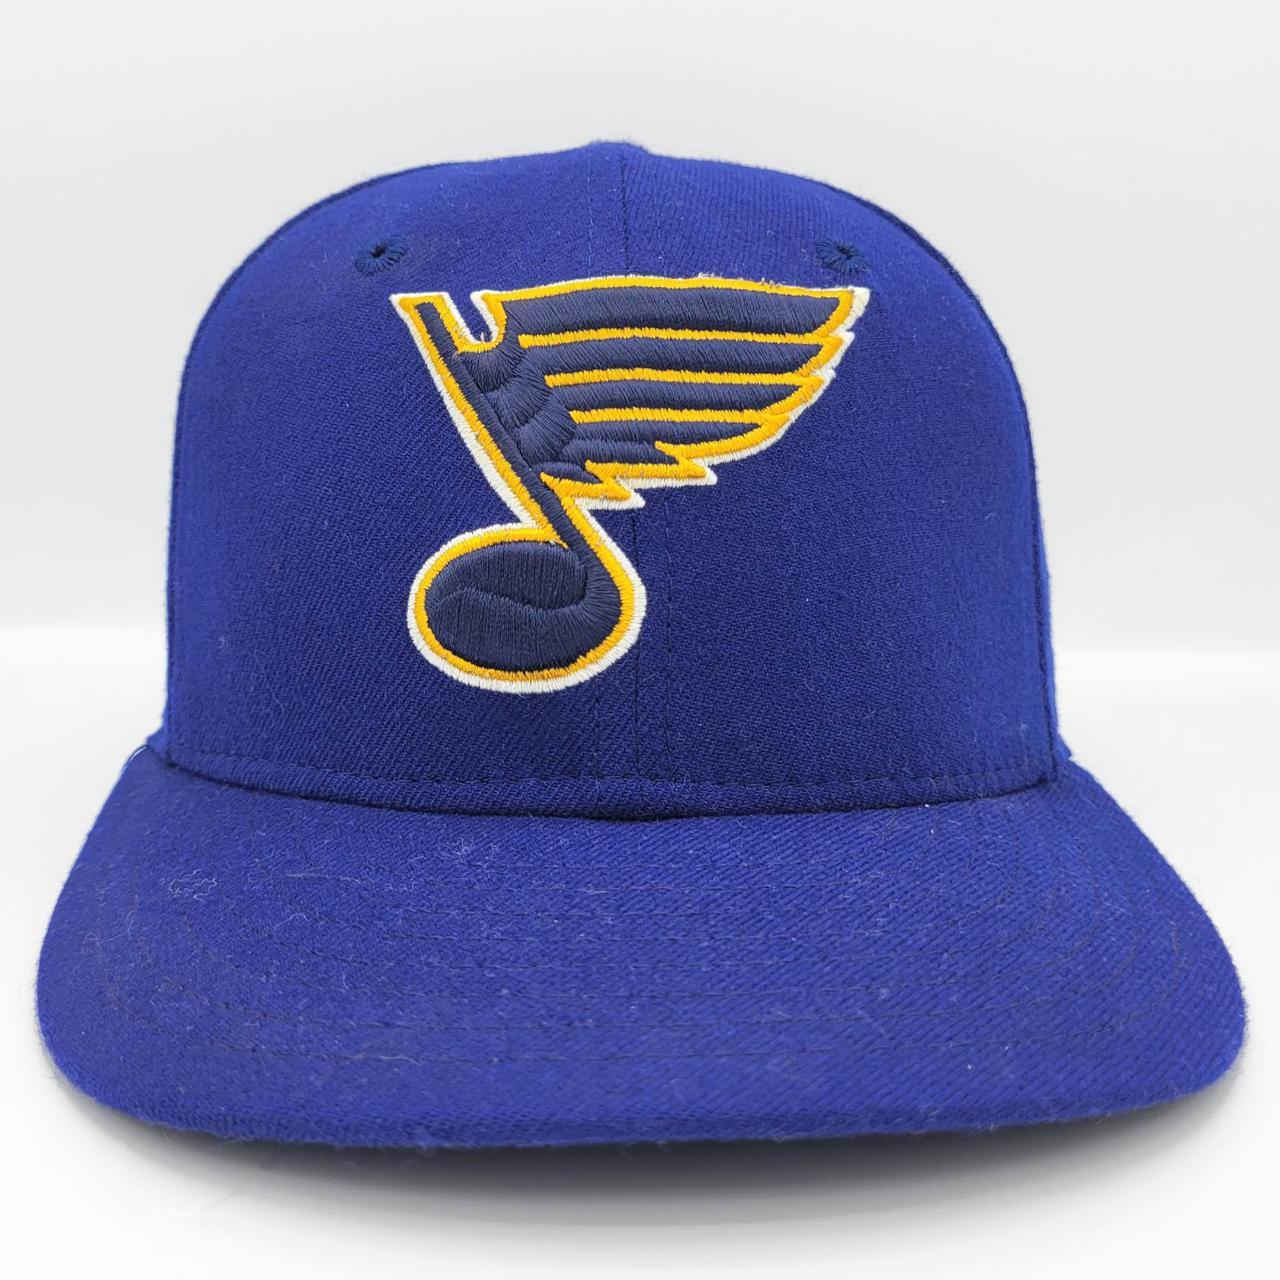 St. Louis Blues Hat Lot Of 4 Different Hats